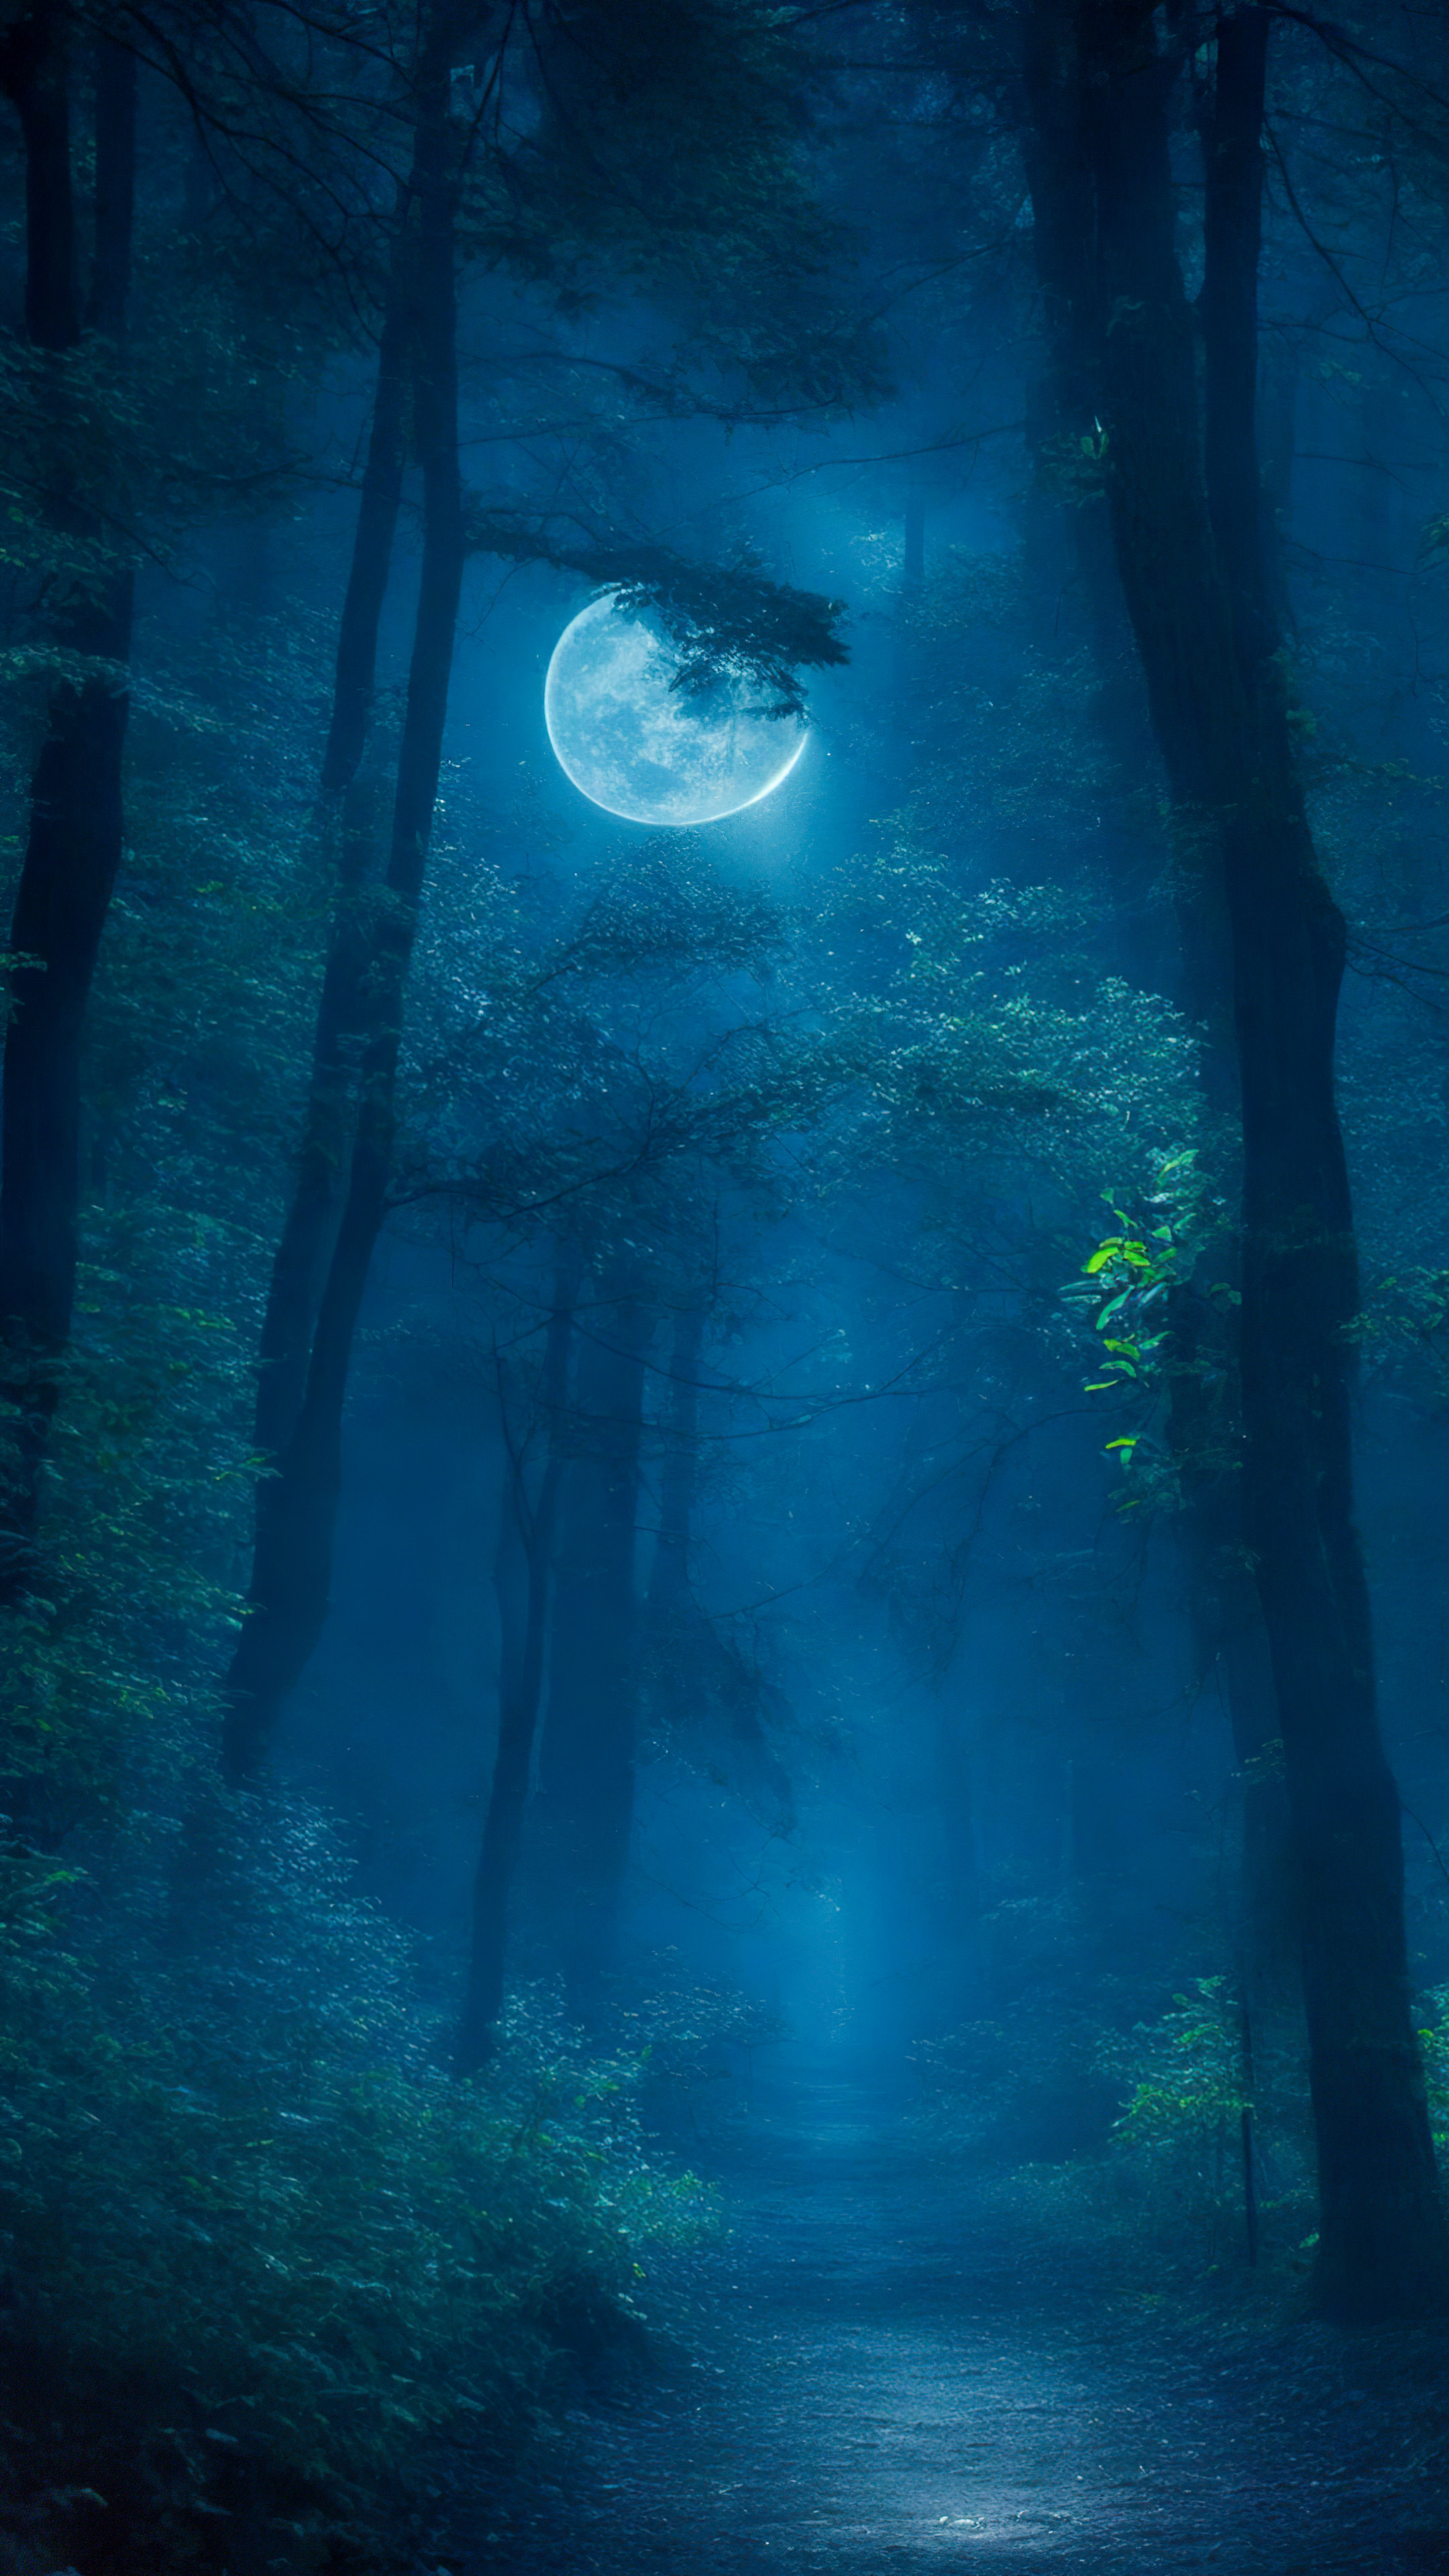 Vivez le mystère avec notre meilleur arrière-plan de paysage, présentant une forêt mystérieuse la nuit, où la lumière de la lune filtre à travers les arbres, créant une atmosphère enchantée et étrange.